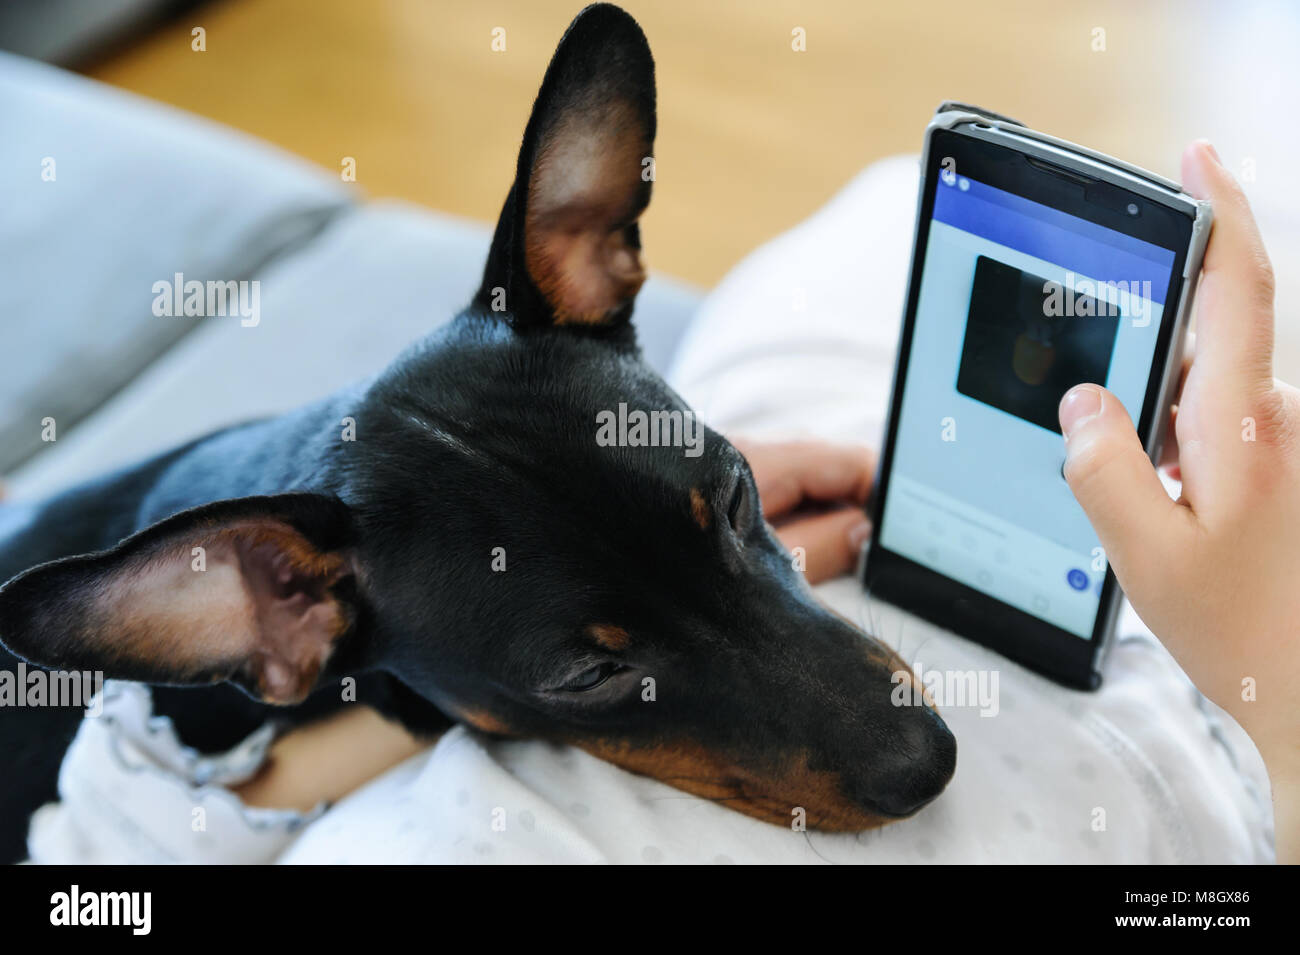 La ragazza ha le mani tenendo un smartphone. La testa del cane è sul ventre della ragazza. Foto Stock